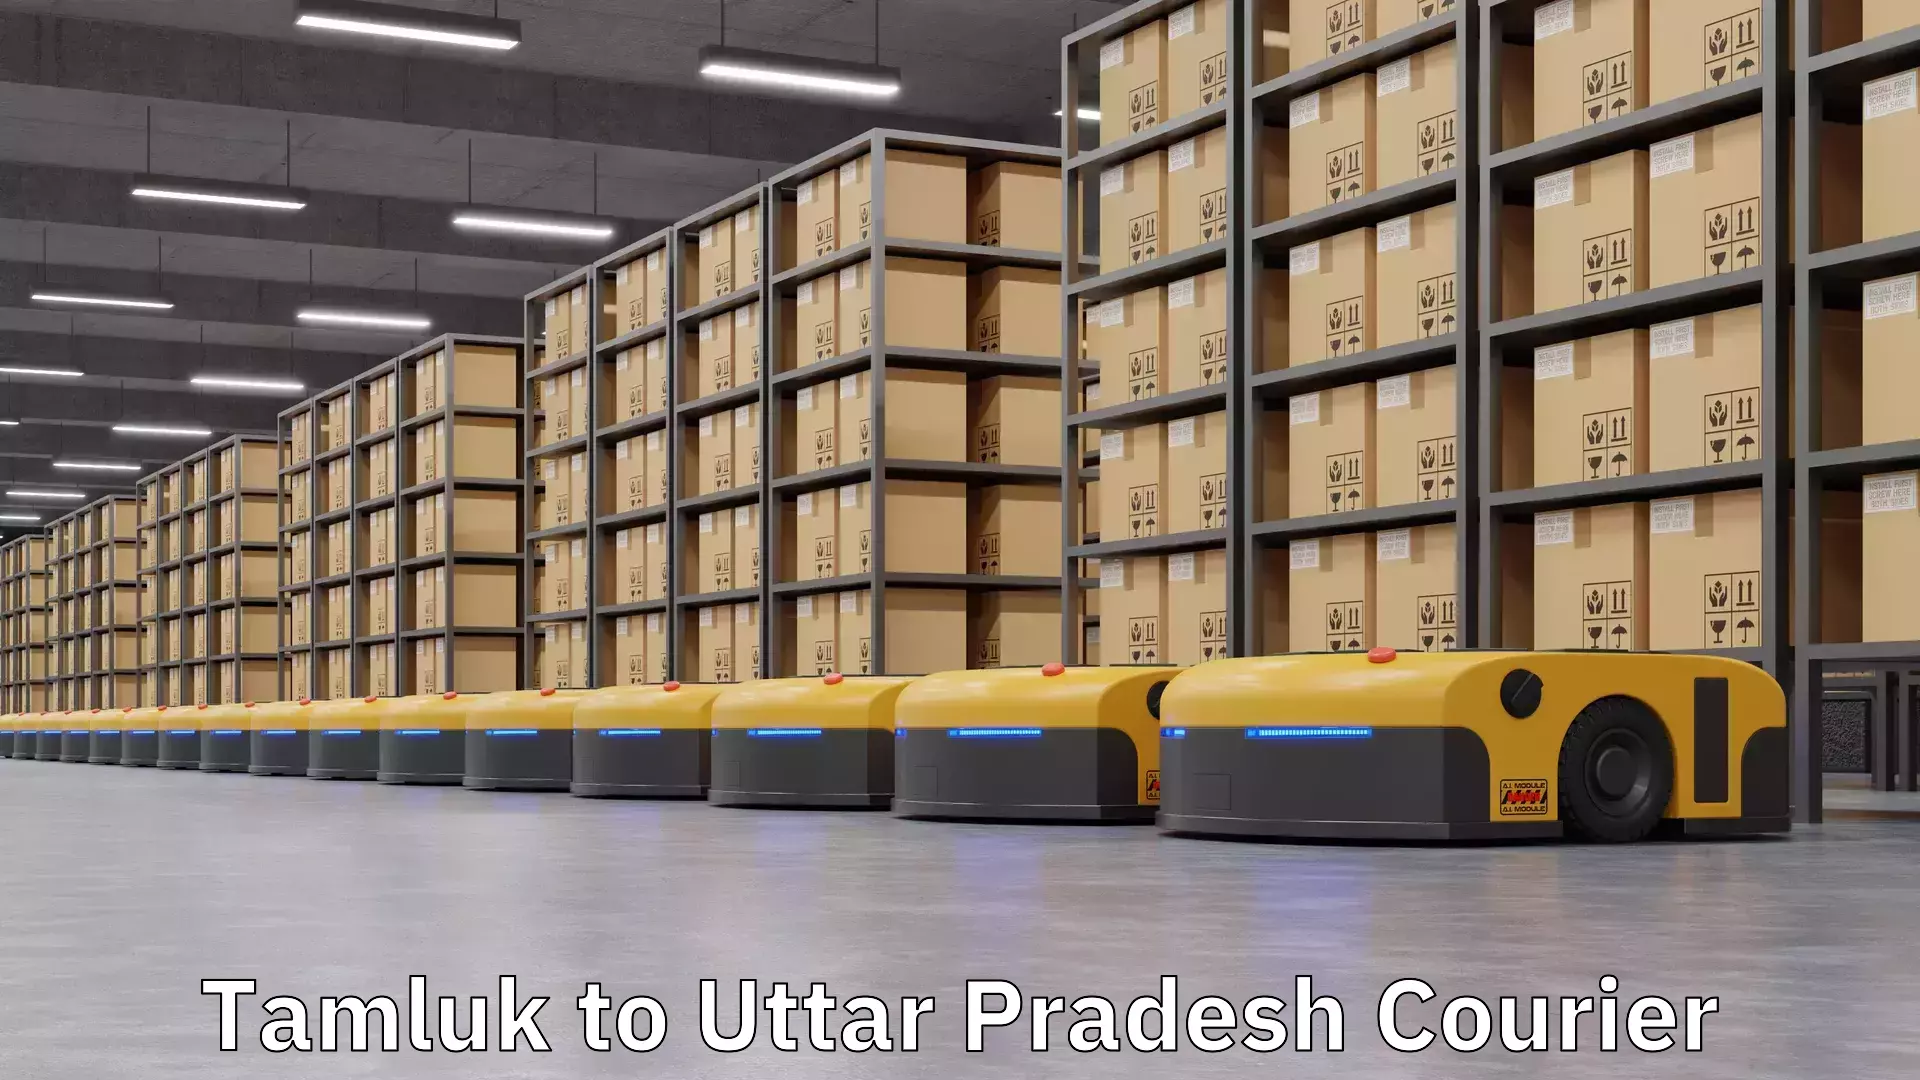 Fast shipping solutions Tamluk to Uttar Pradesh